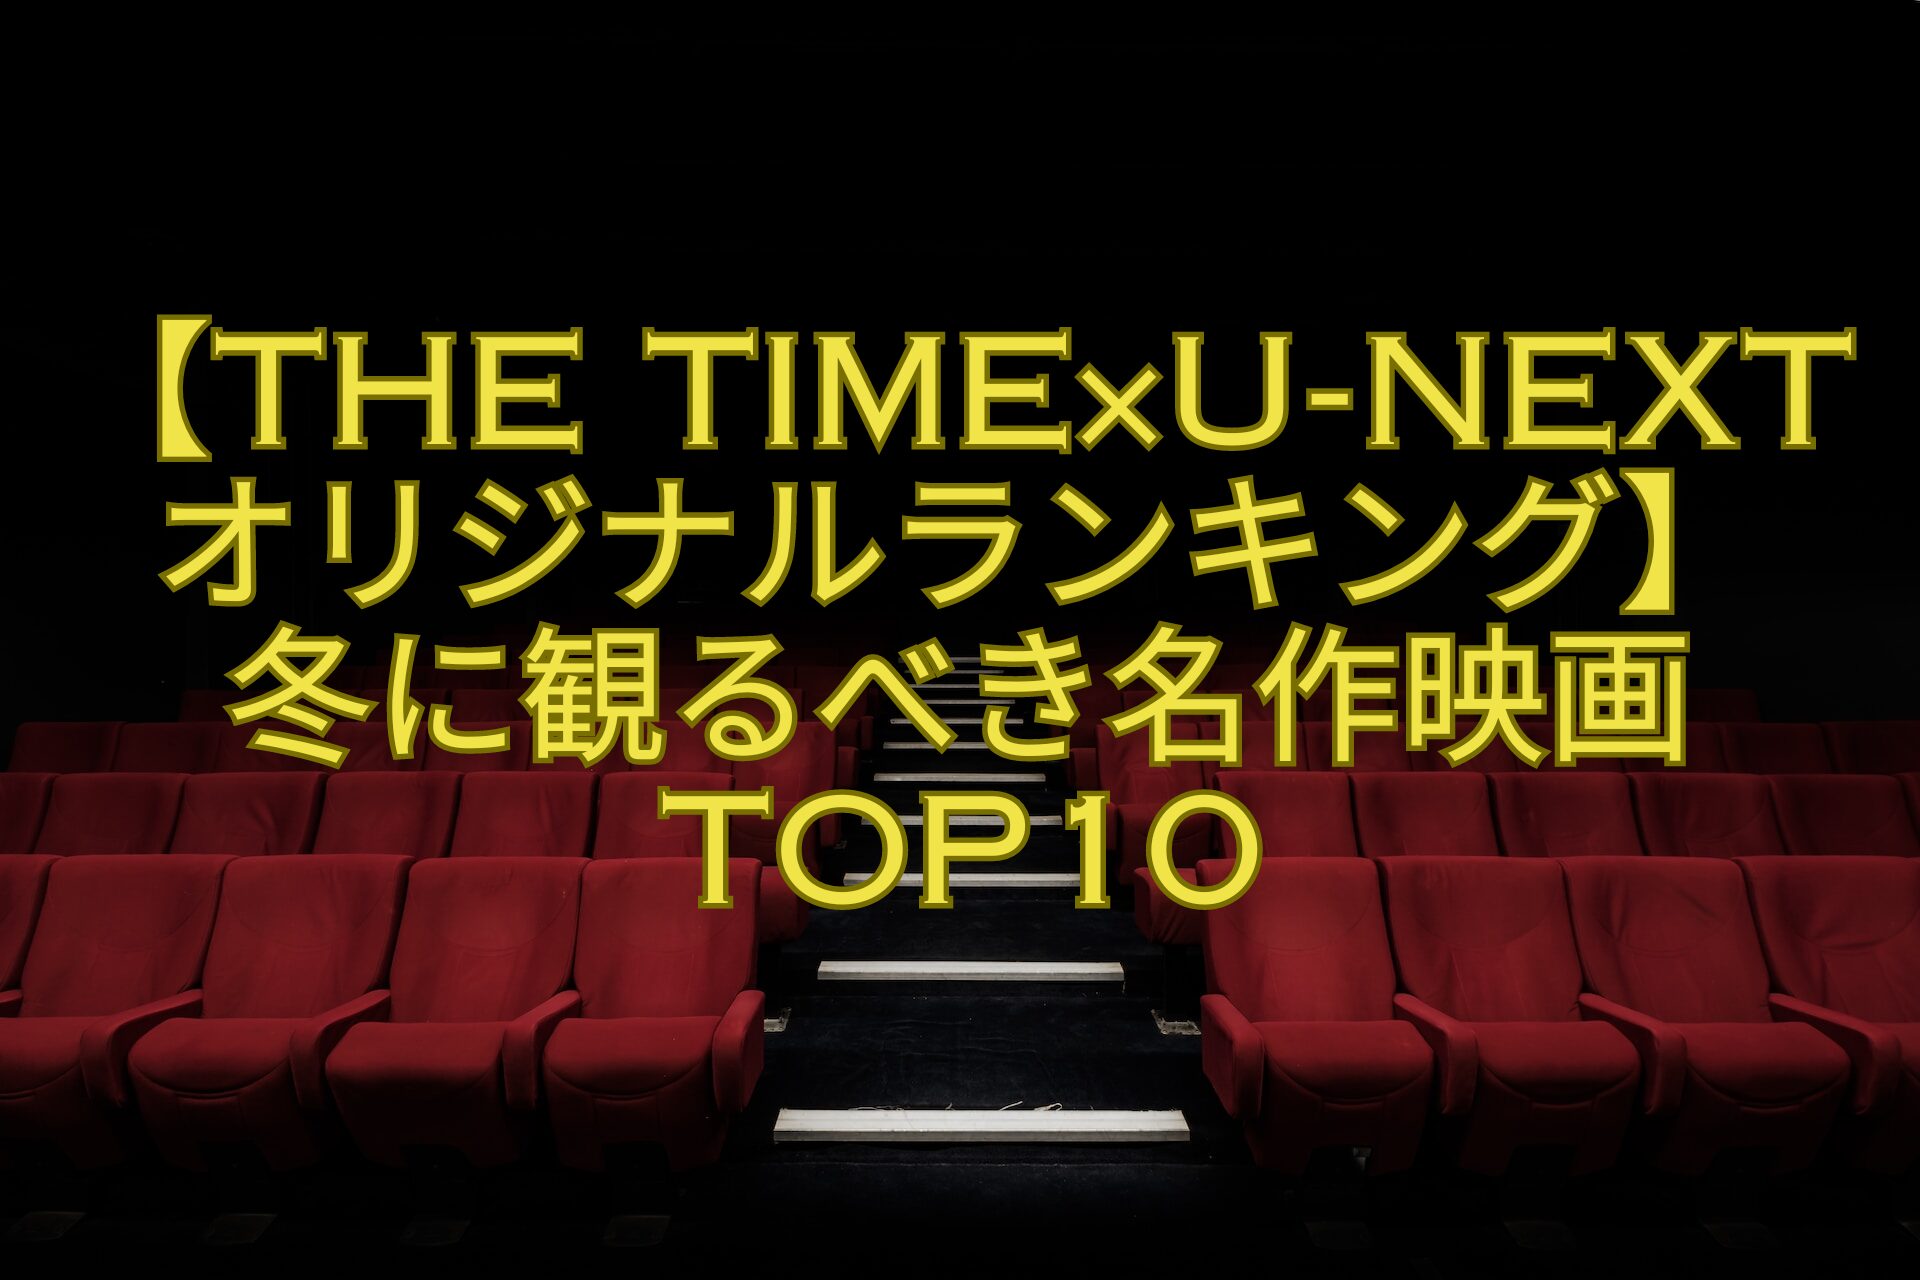 【THE-TIME×U-NEXTオリジナルランキング】-冬に観るべき名作映画TOP10